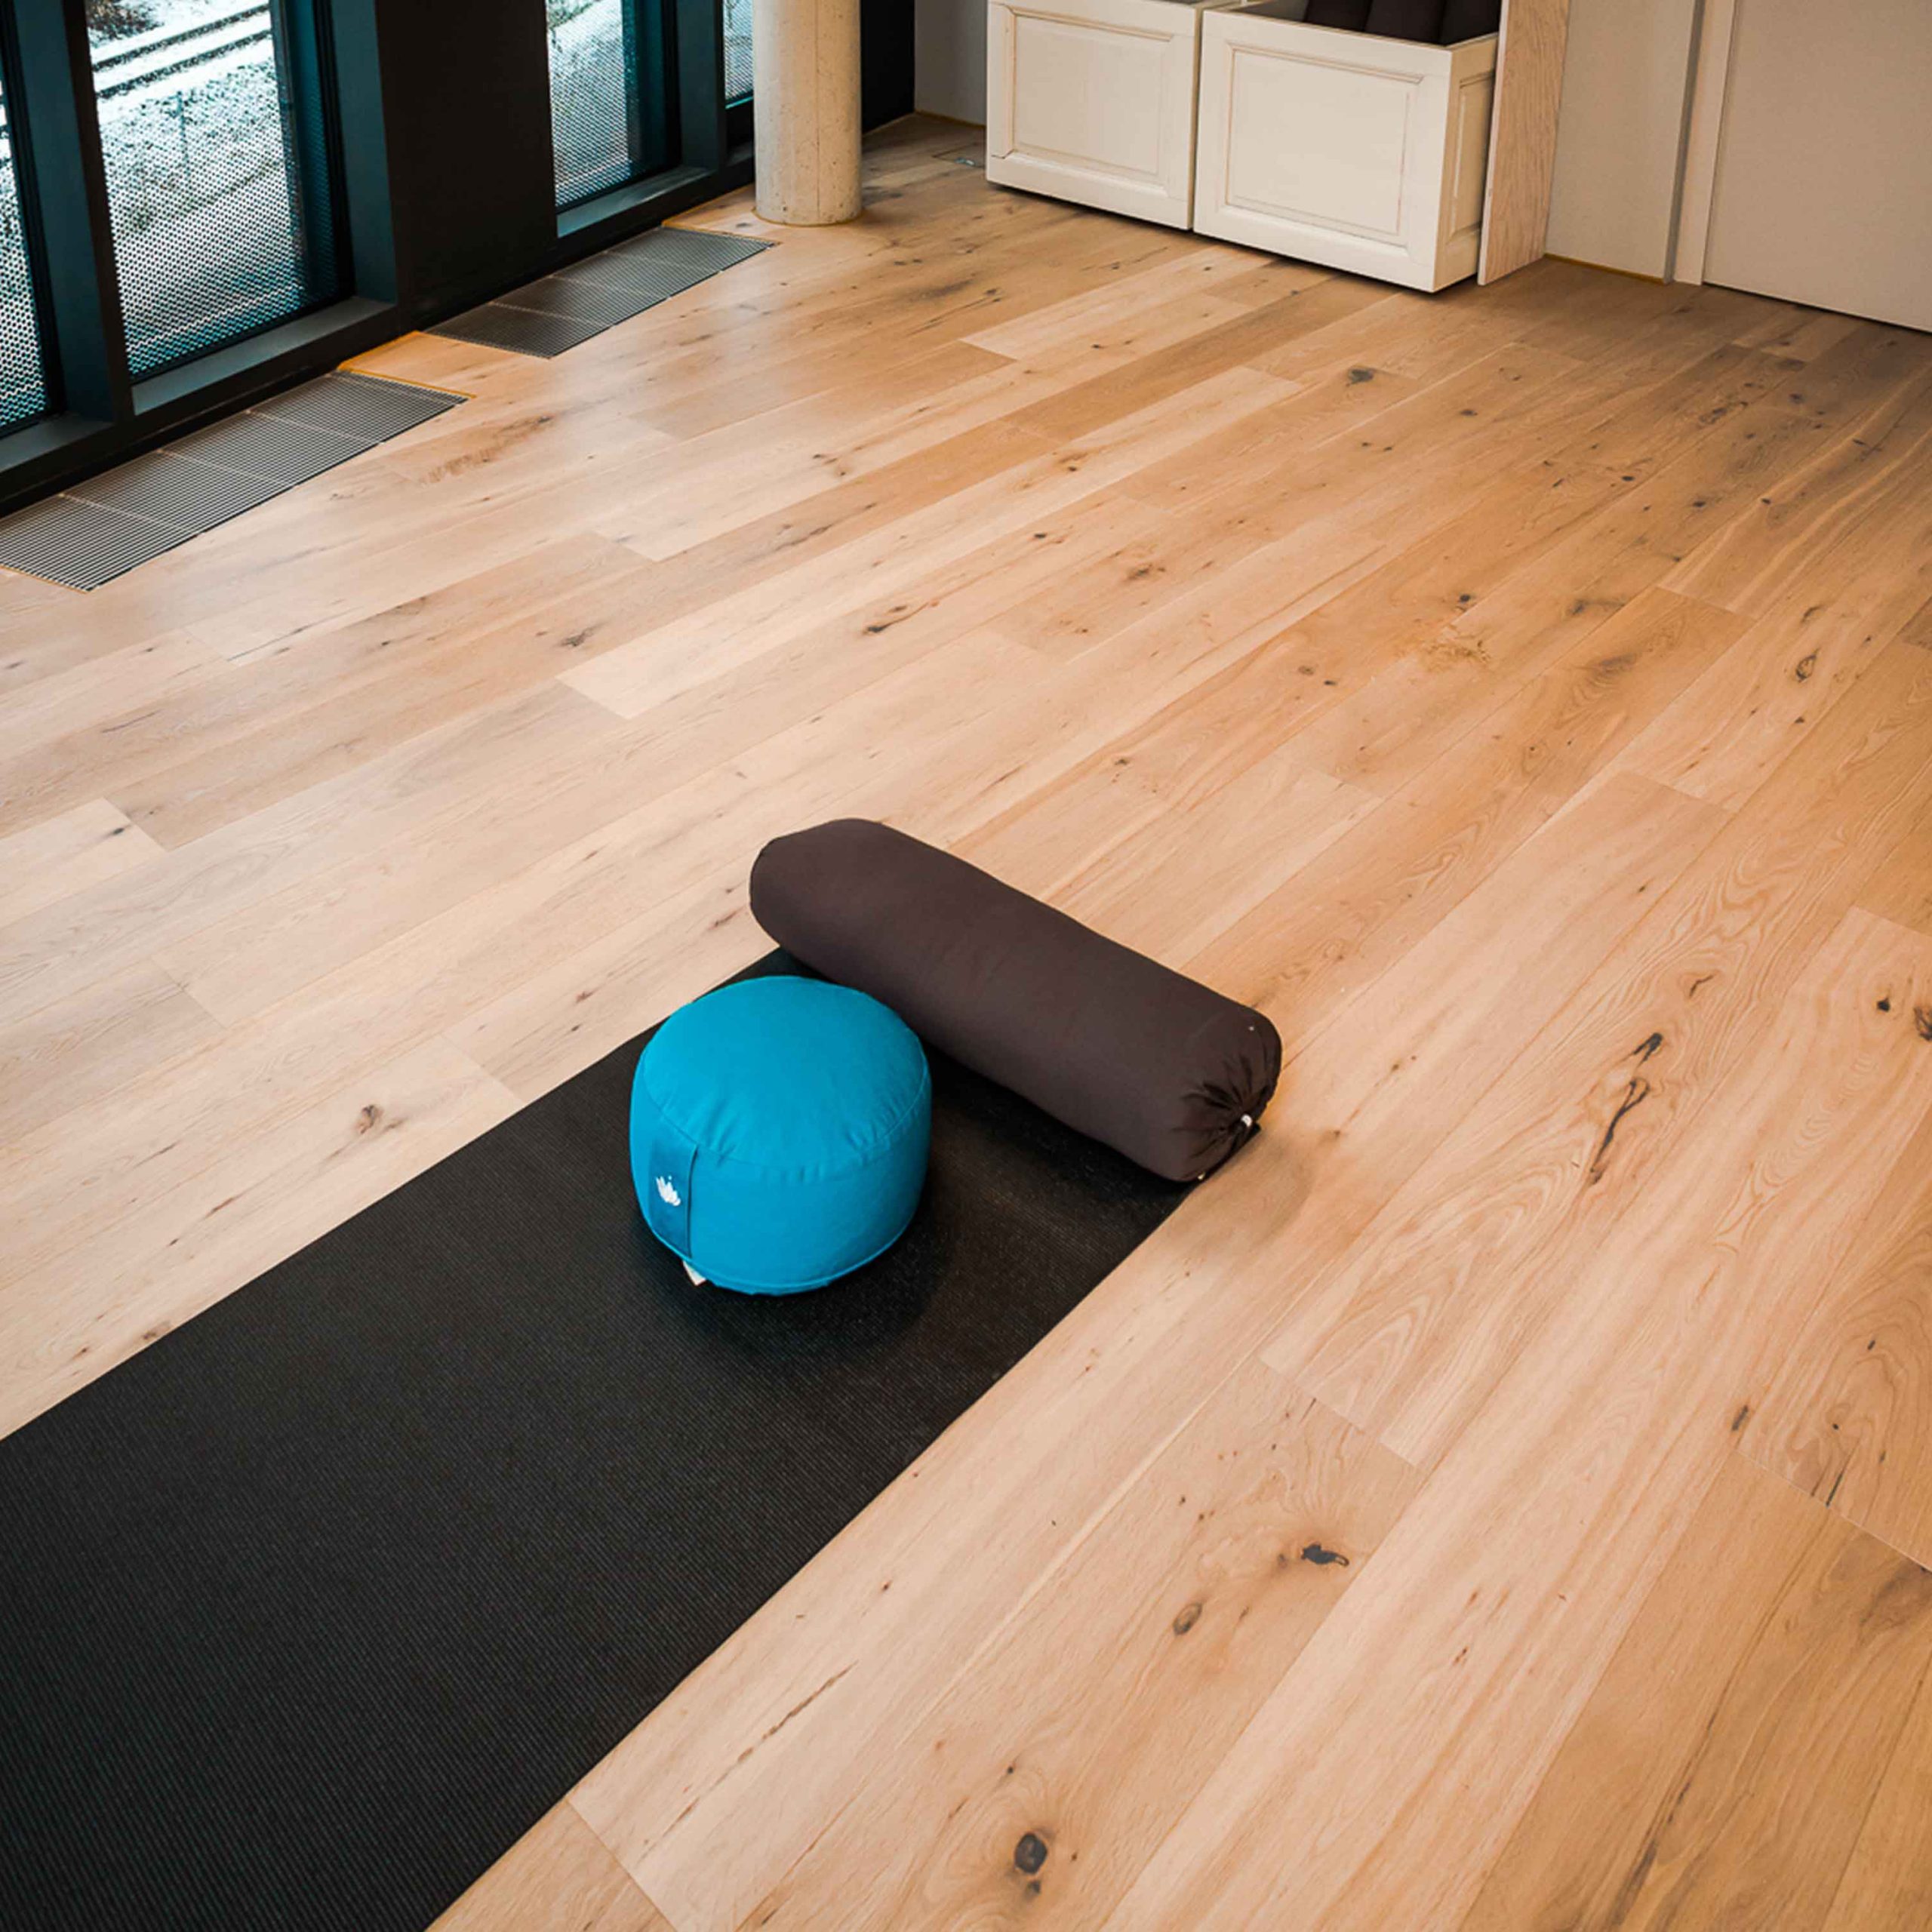 Bild zeigt Turnmatte im Sportbereich mit neu verlegten Holzbodens im Merkur Lifestyle Gym.